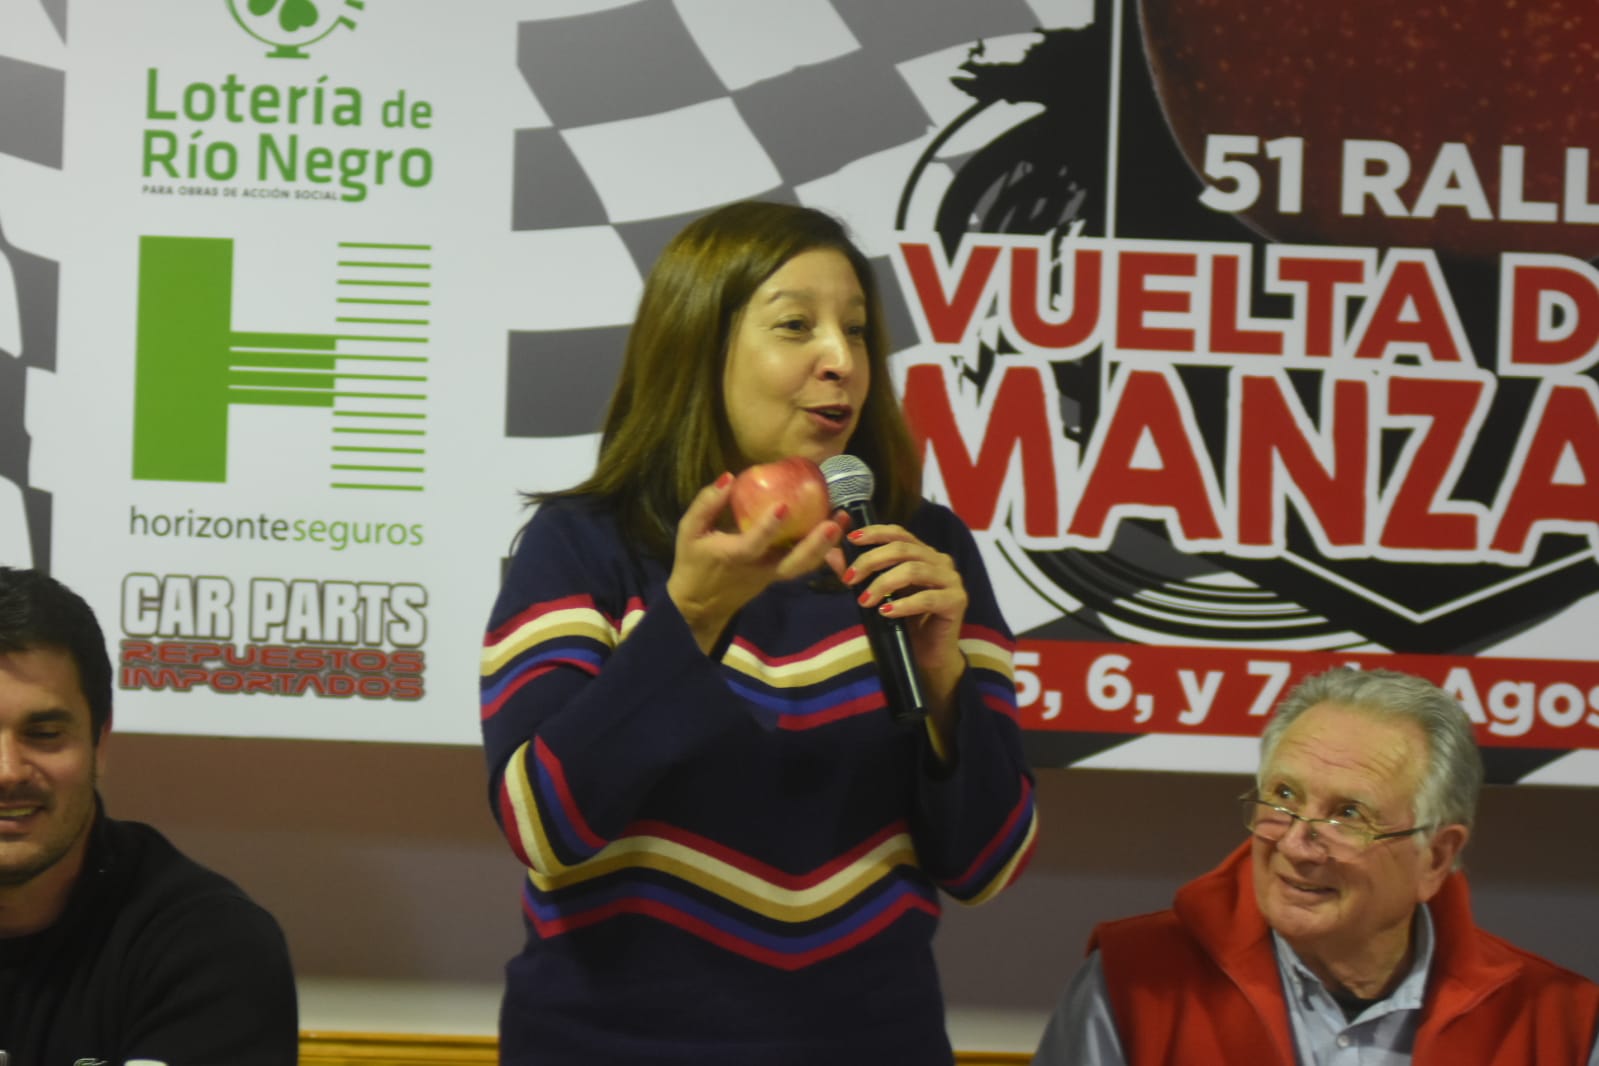 Arabela participó de la presentación del evento junto a otros autoridades provinciales y municipales. Foto Juan Thomes